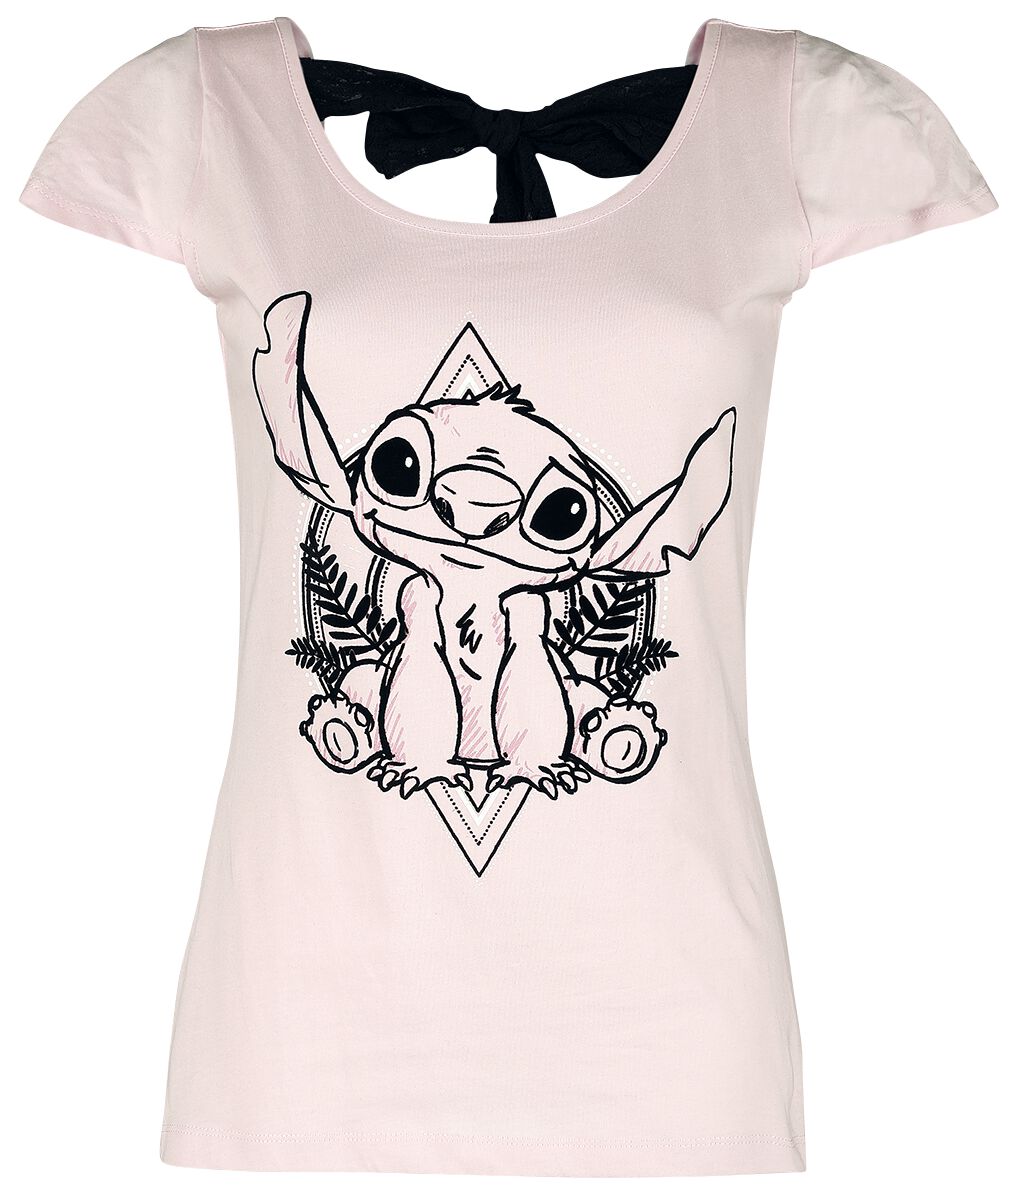 Lilo & Stitch Stitch T-Shirt light pink